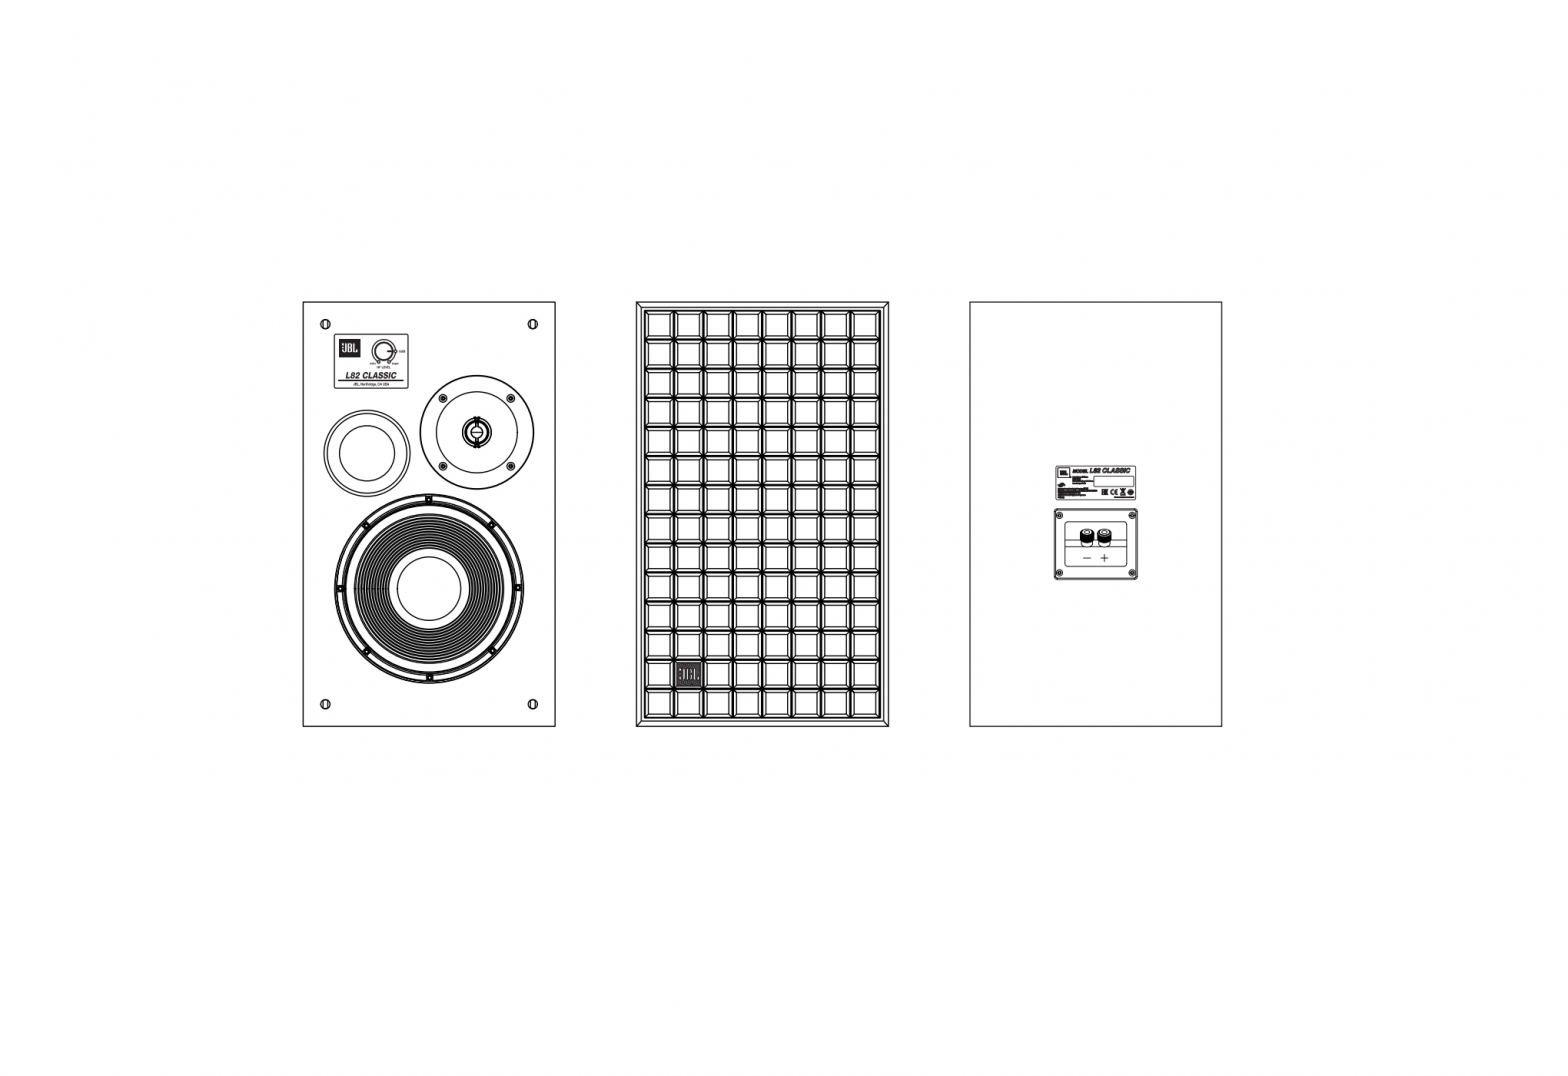 JBL Iconic 2-Way Bookshelf Loudspeaker Owner’s Manual